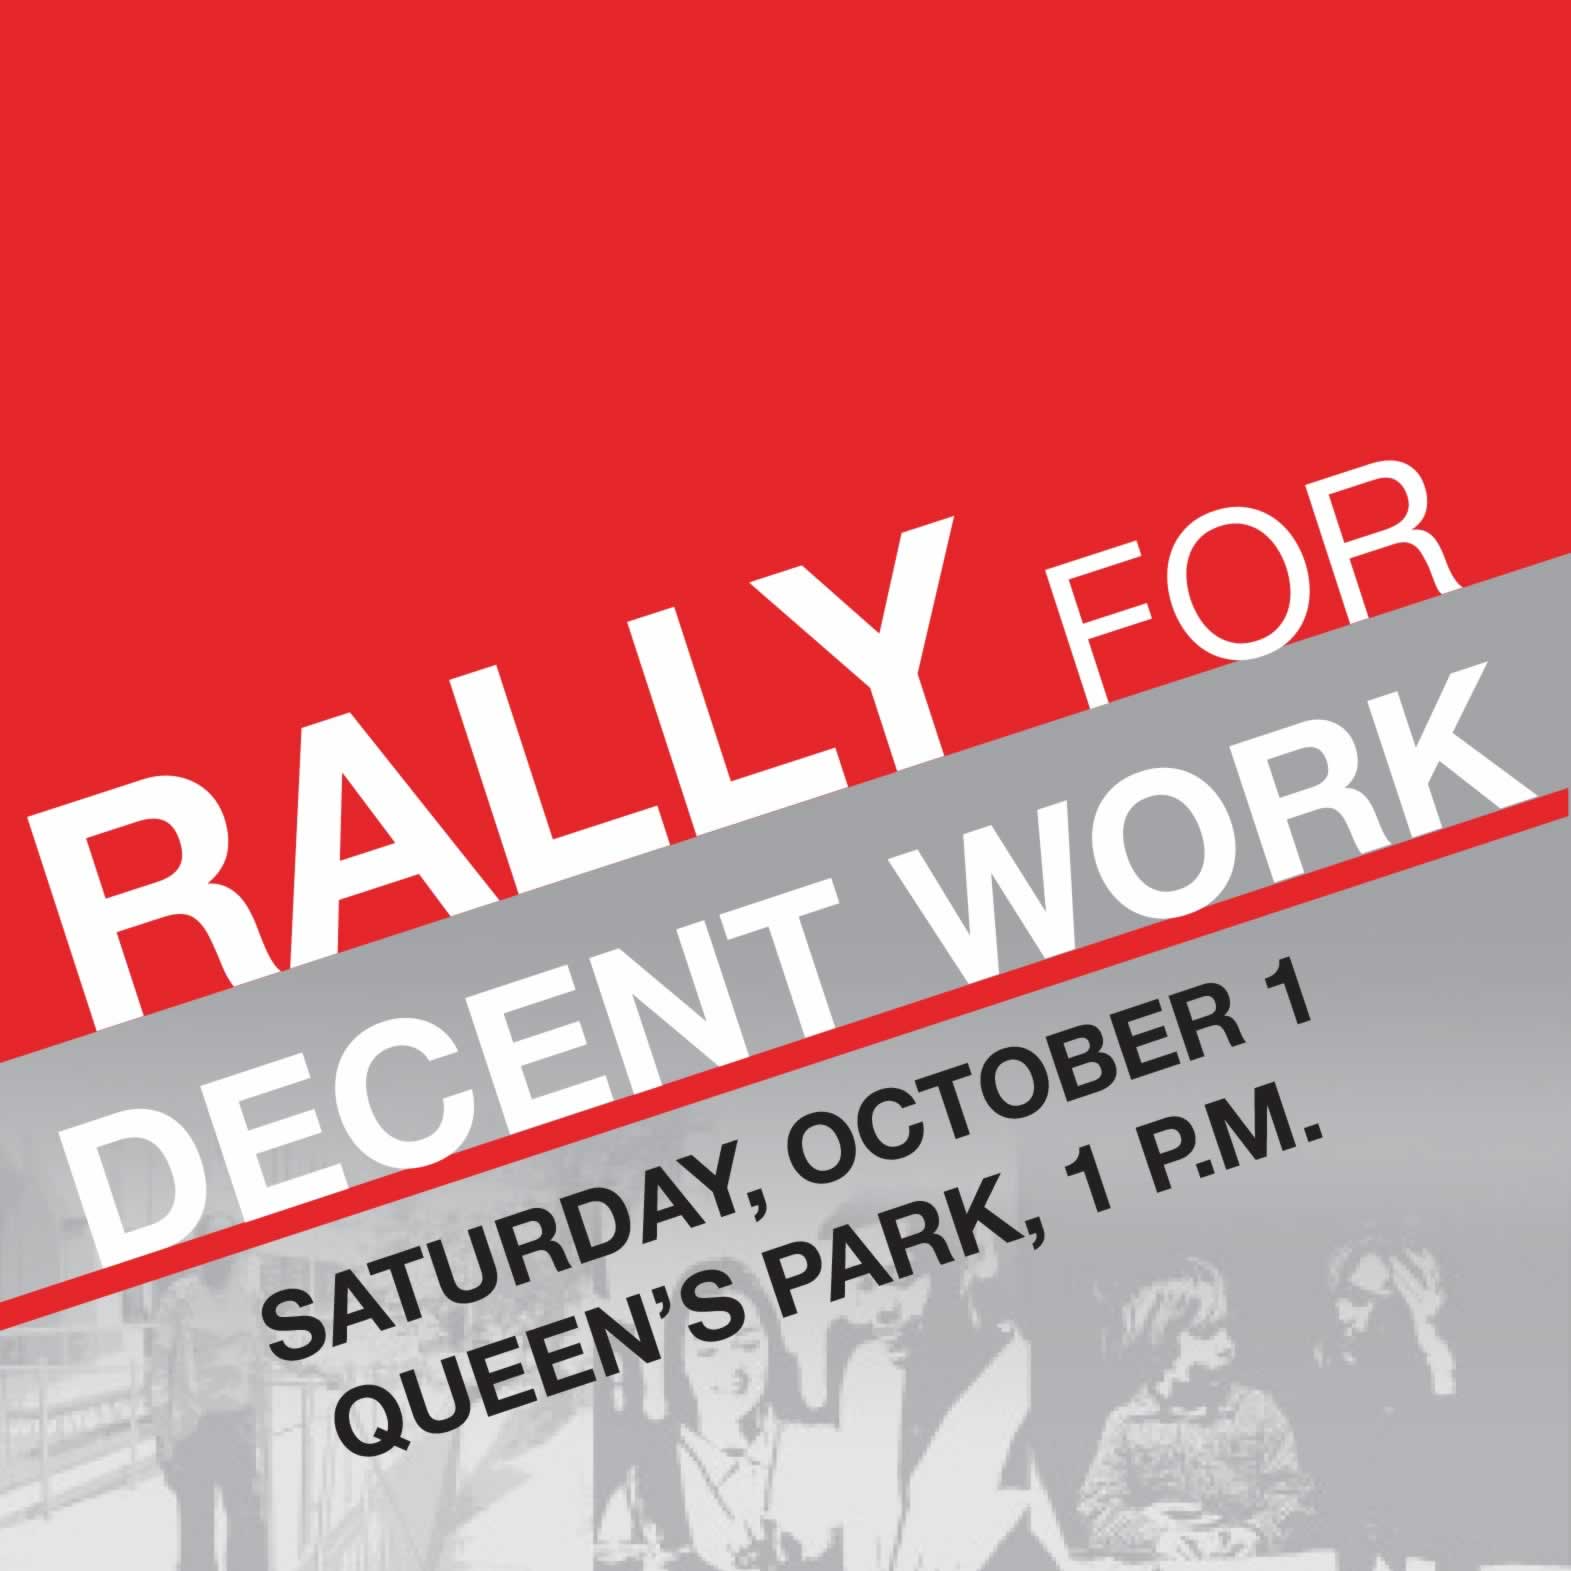 Rally for Decent Work, Oct 1, Queen't Park